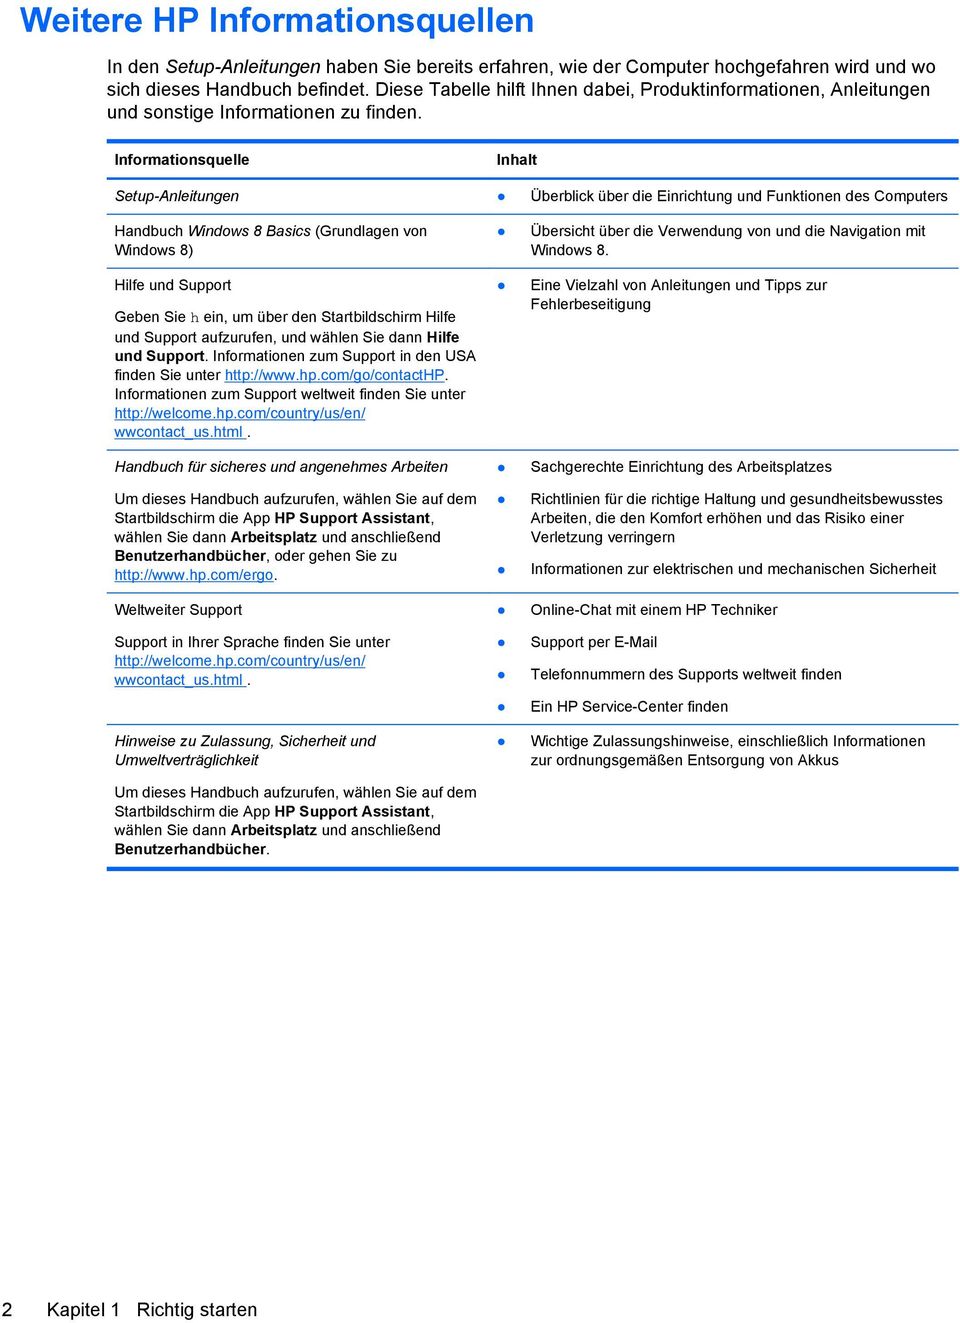 Informationsquelle Inhalt Setup-Anleitungen Überblick über die Einrichtung und Funktionen des Computers Handbuch Windows 8 Basics (Grundlagen von Windows 8) Hilfe und Support Geben Sie h ein, um über